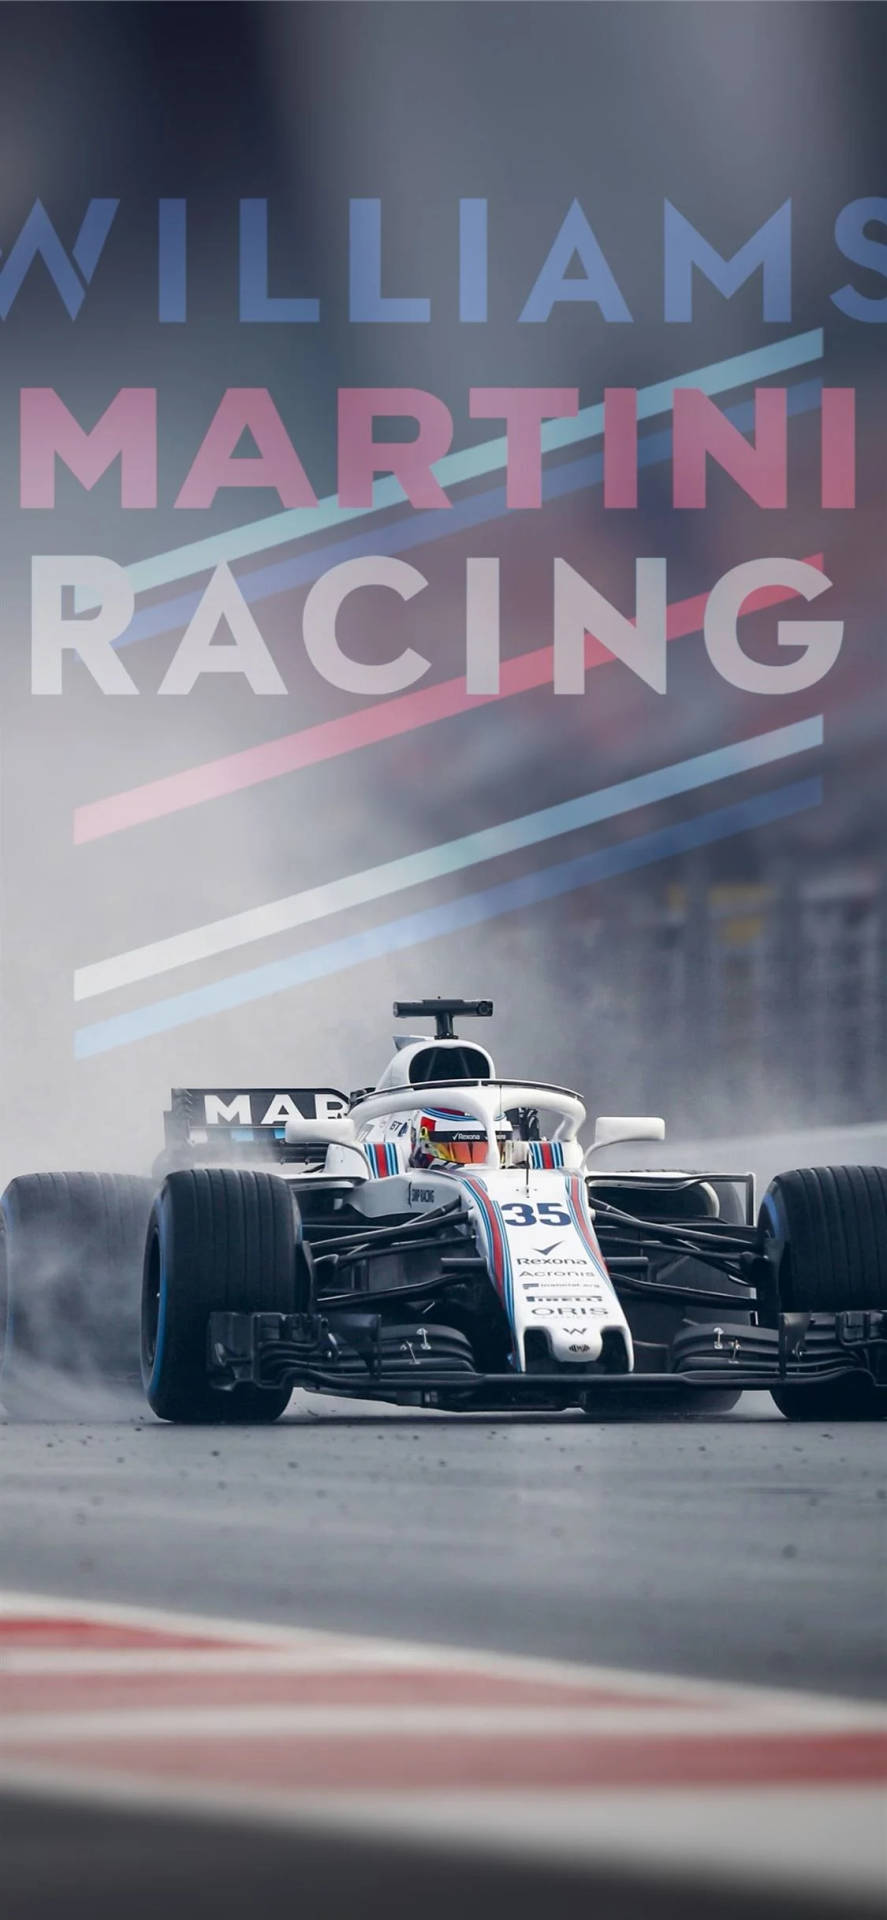 Williams Martini Racing Wallpaper